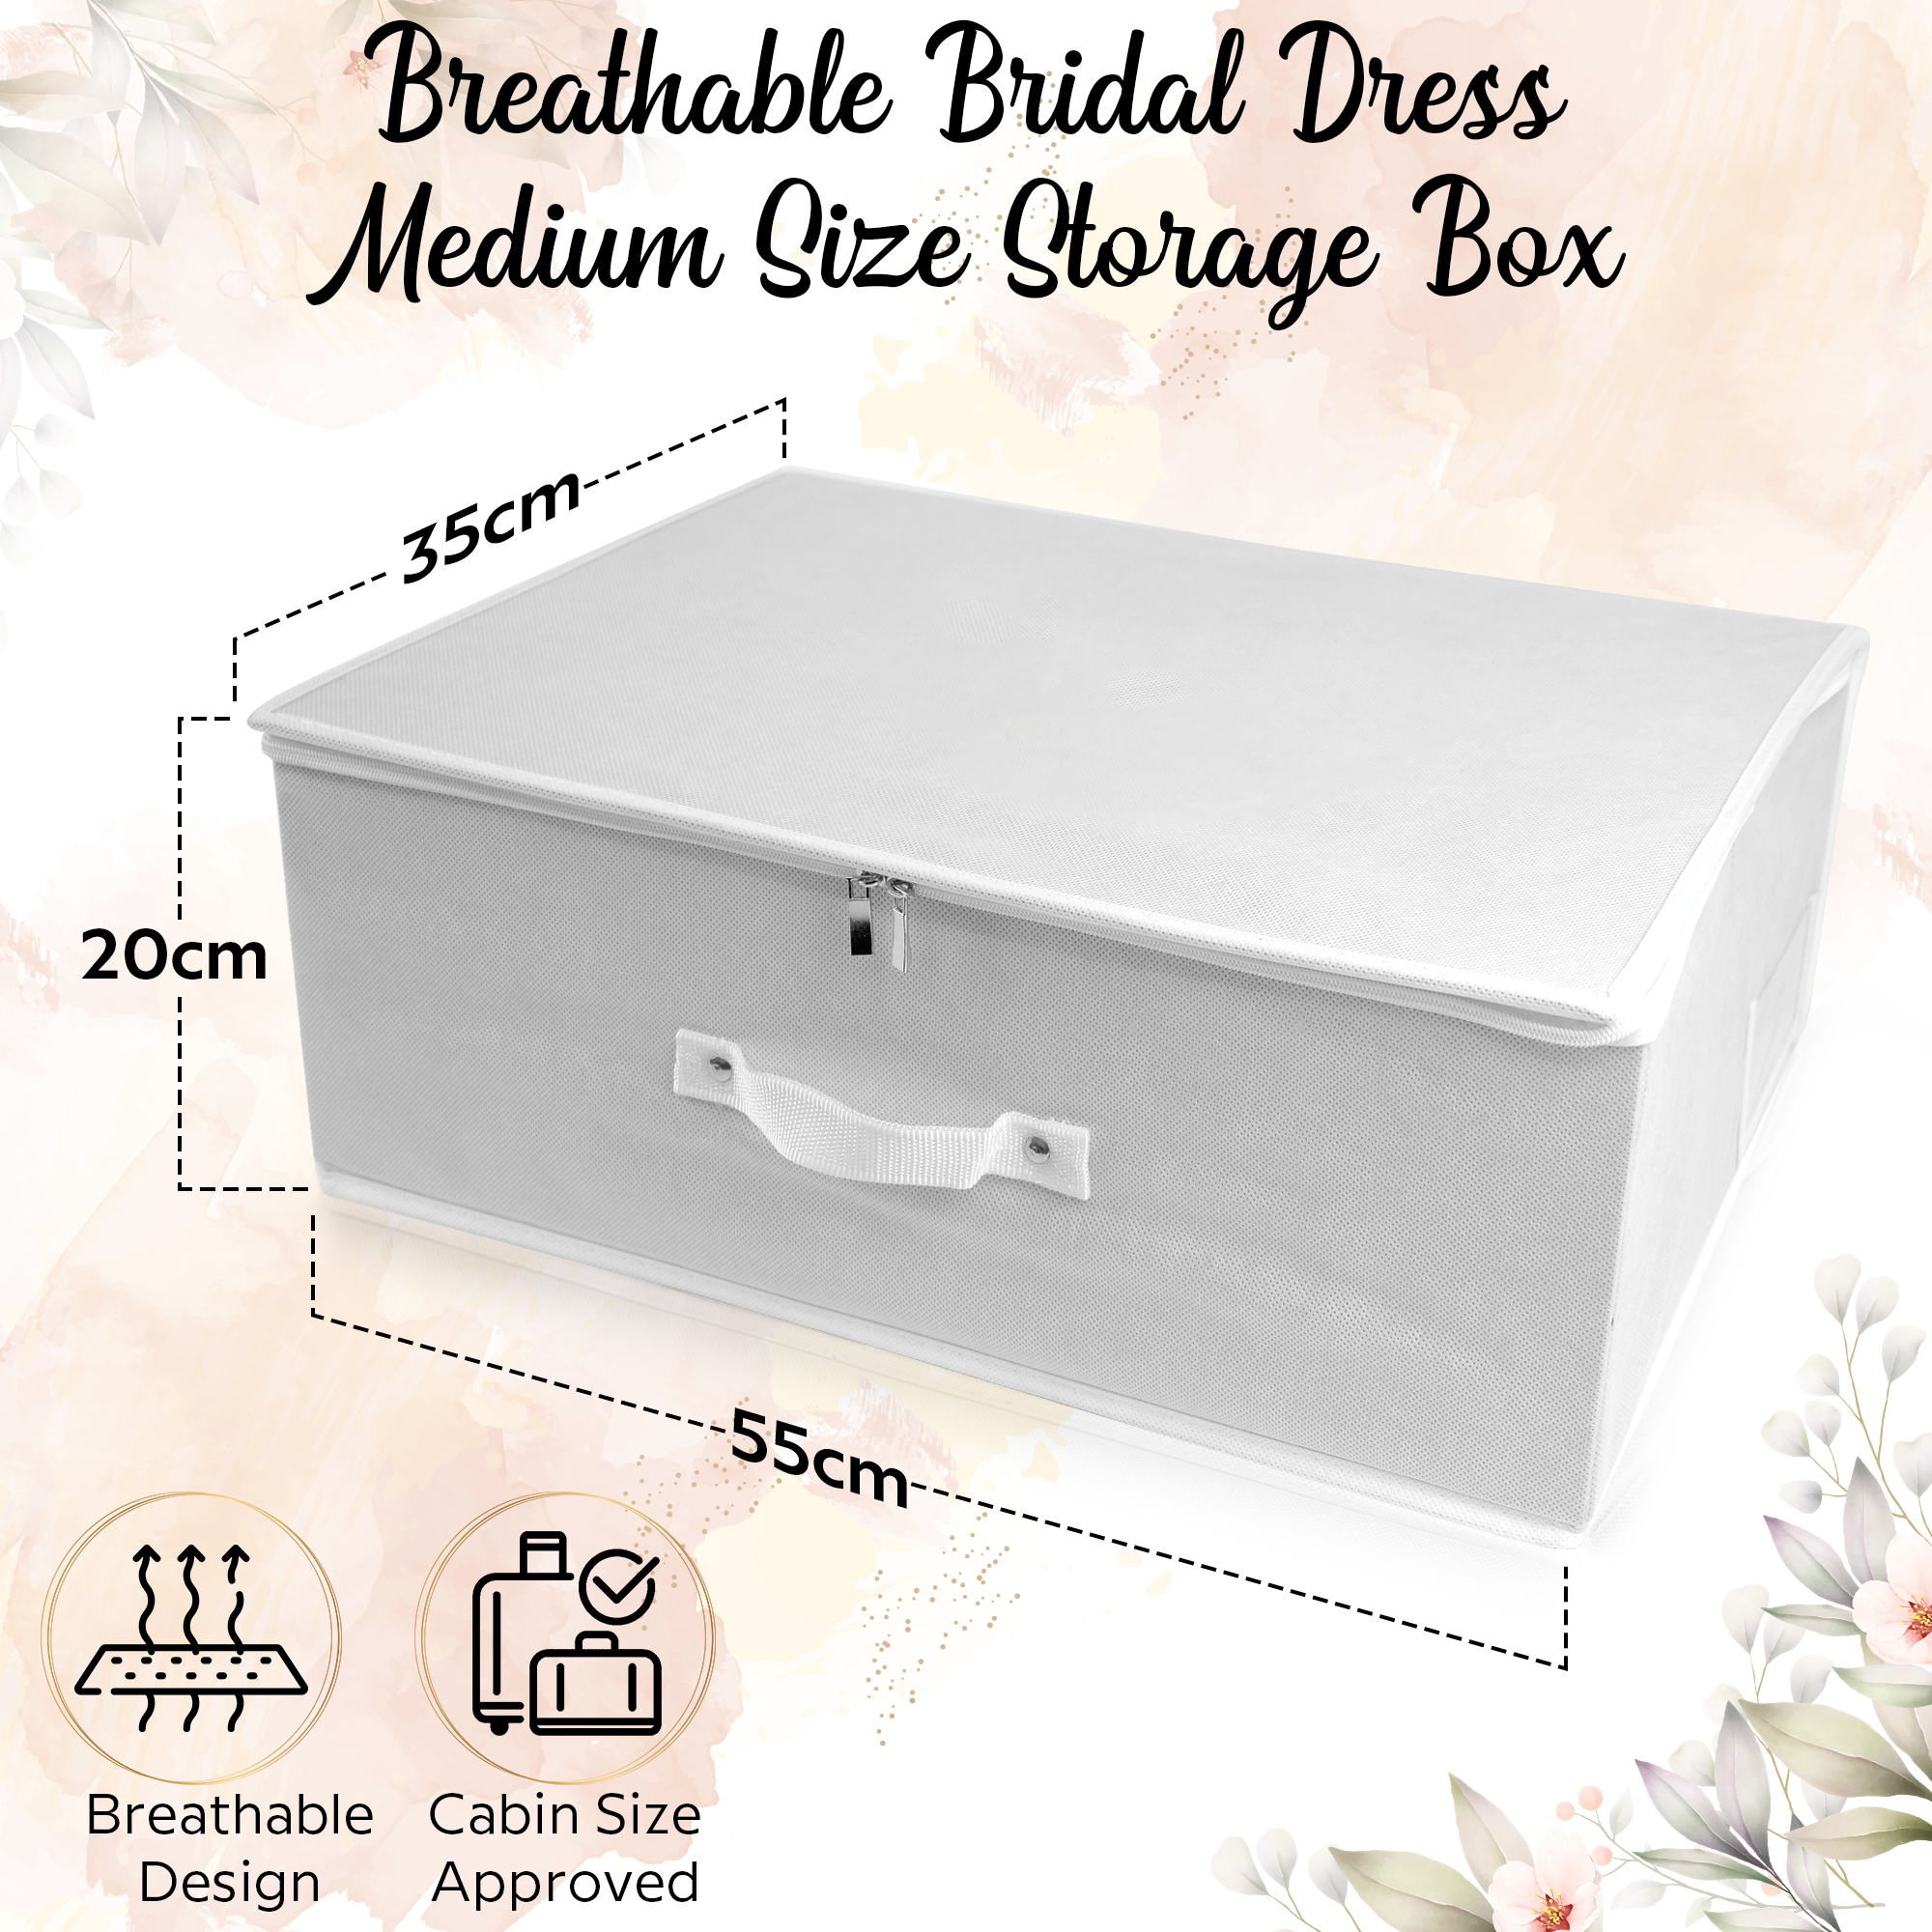 Wedding Dress Travel Storage Boxes Medium & Large Size